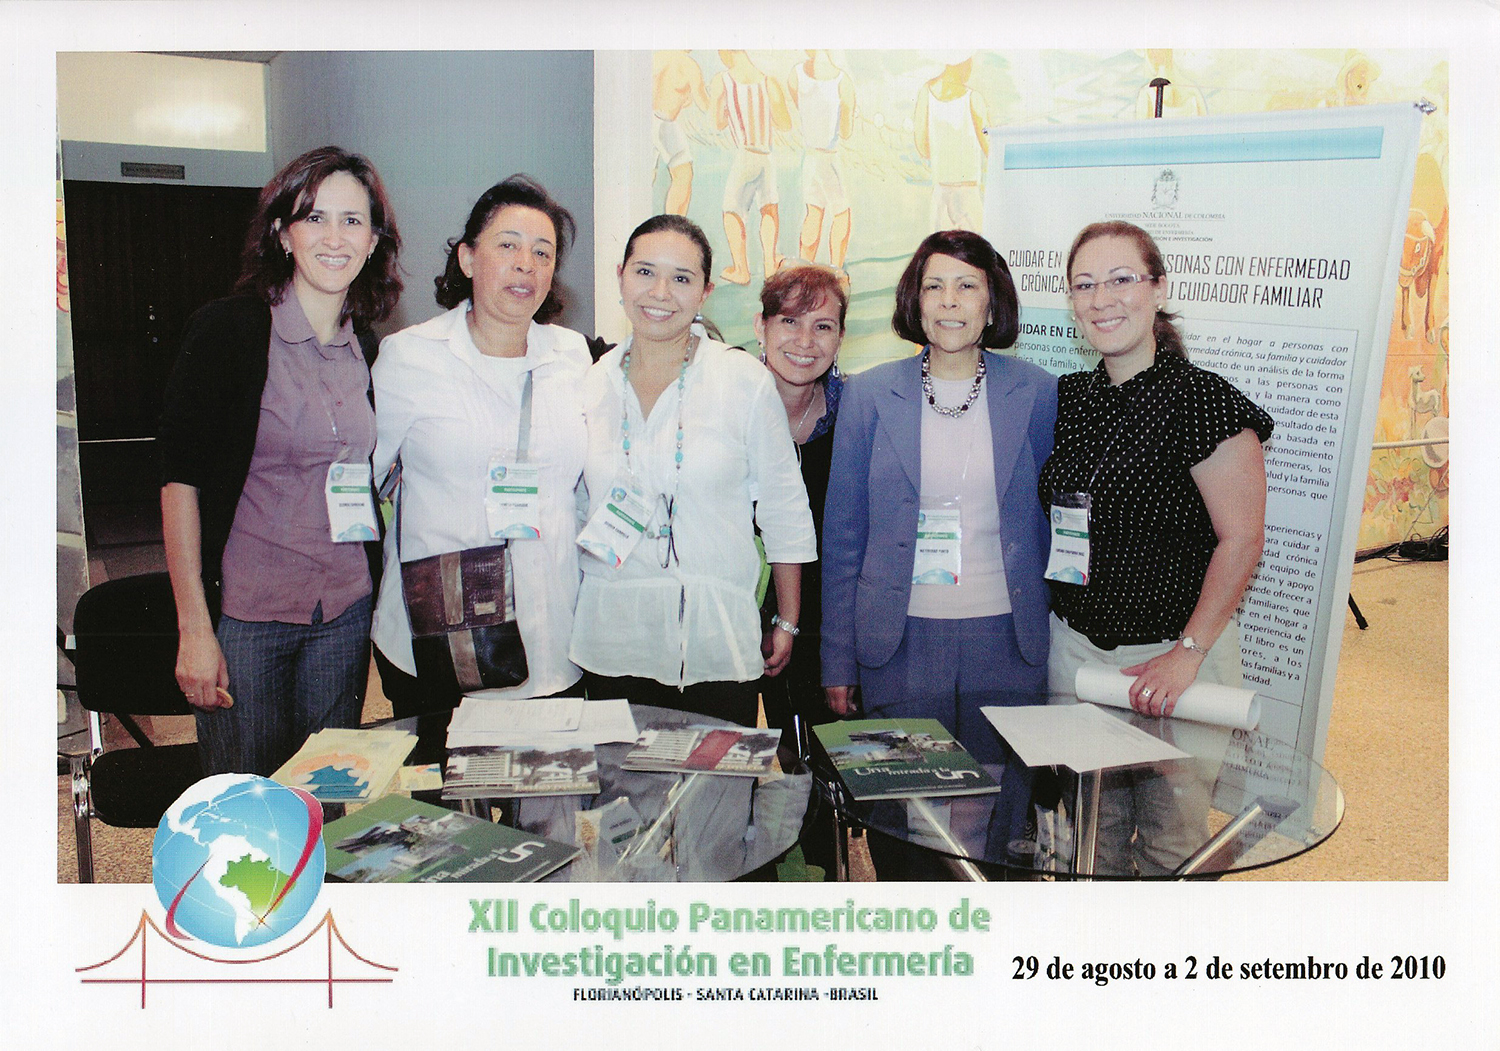 Lanzamiento de libros del Grupo de investigación en el XII Coloquio Panamericano de Investigación en Enfermería, Brasil, 2010